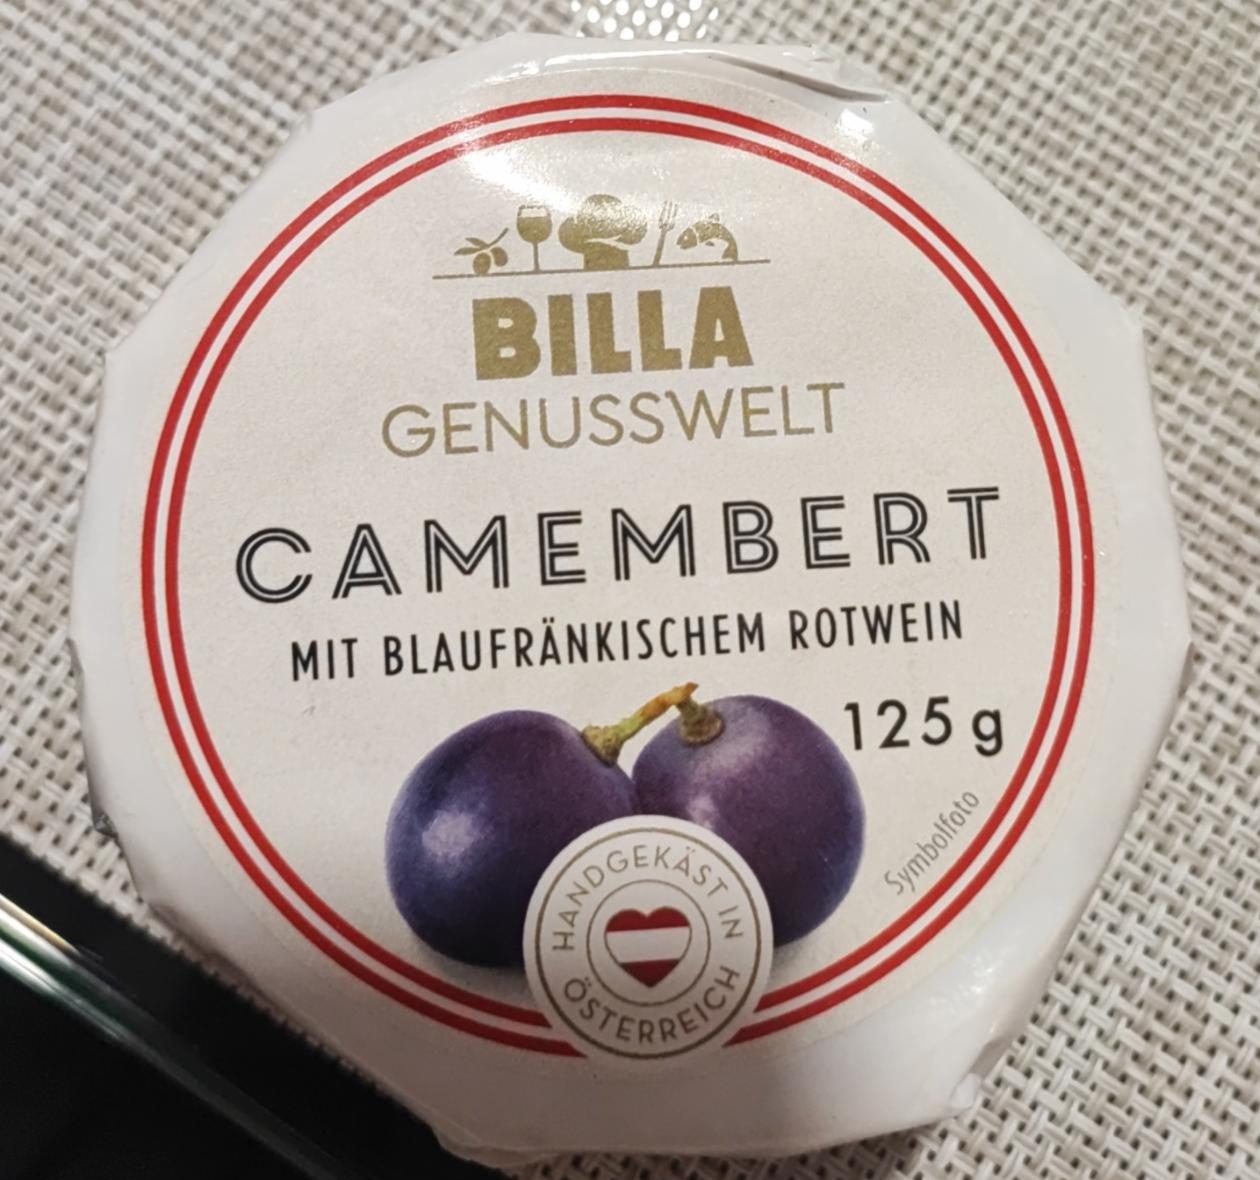 Fotografie - Camembert mit blaufränkischen rotwein Billa